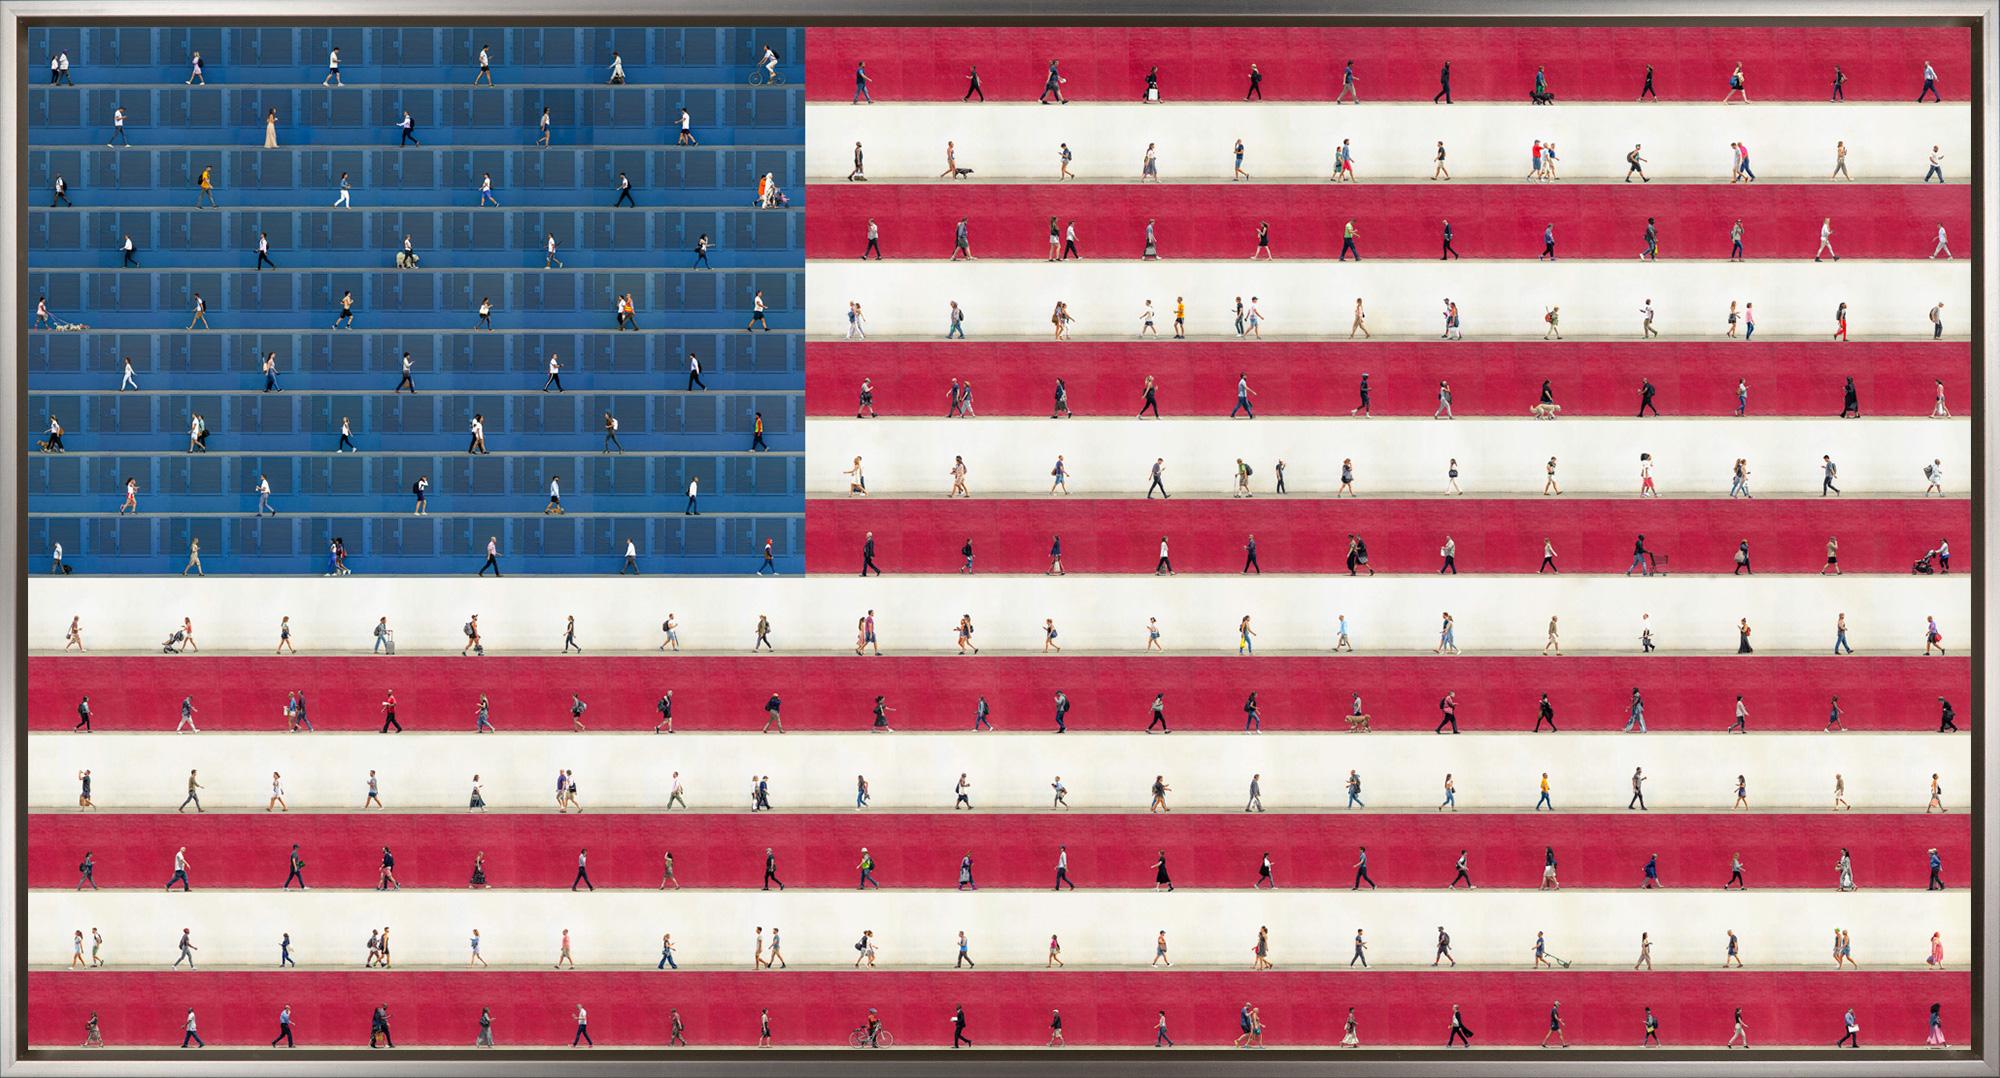 "We the People" est une photographie encadrée sur aluminium de Xan Padron, représentant une compilation de personnages en marche disposés de manière à créer un drapeau américain. La technique caractéristique de Padron, qui consiste à assembler des